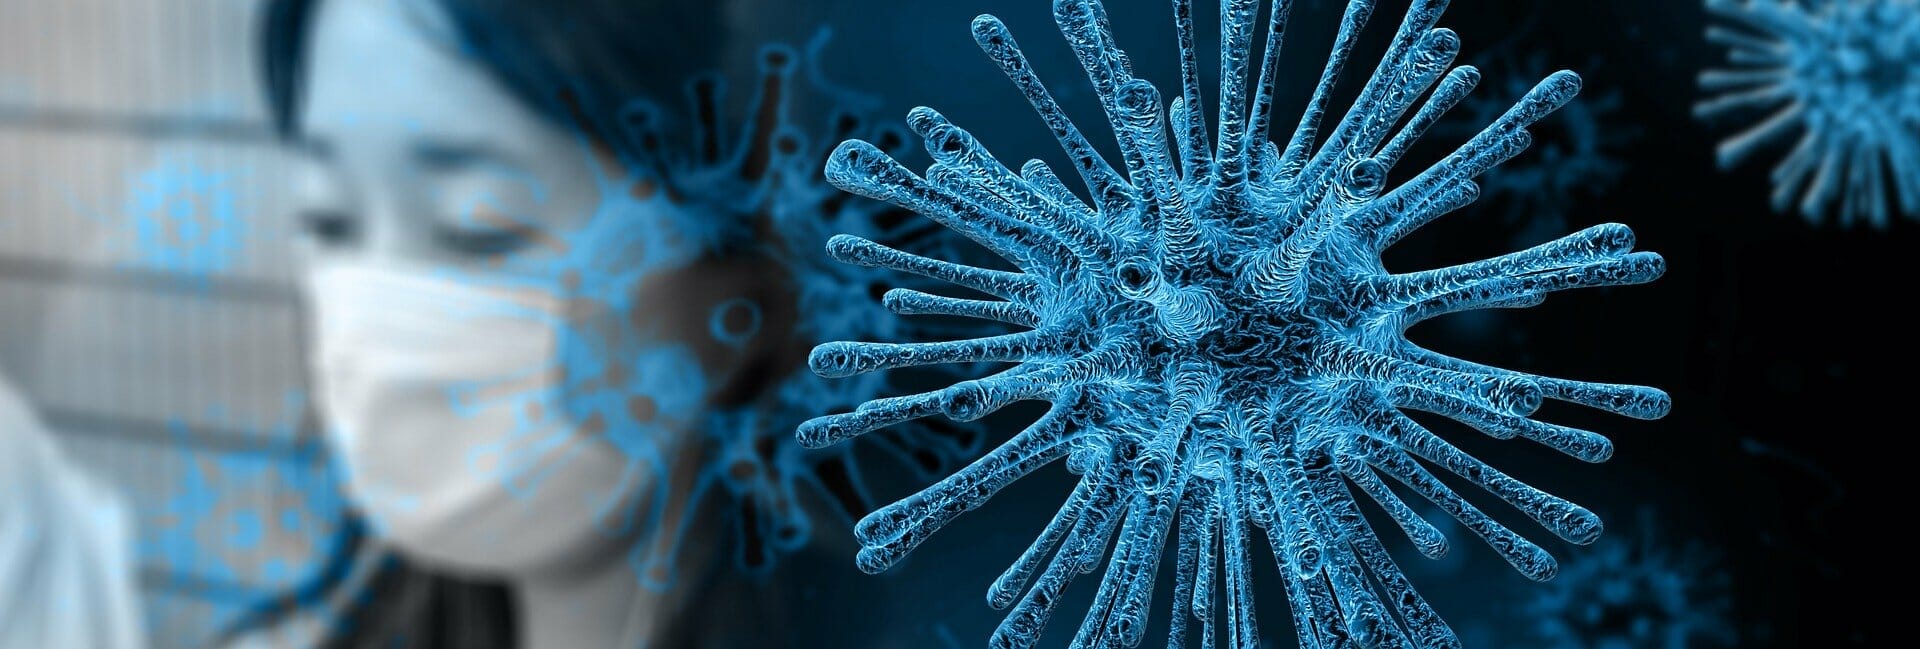 Weitere Auswirkungen durch das Coronavirus
- auch in der MOTORRAD NACHRICHTEN APP